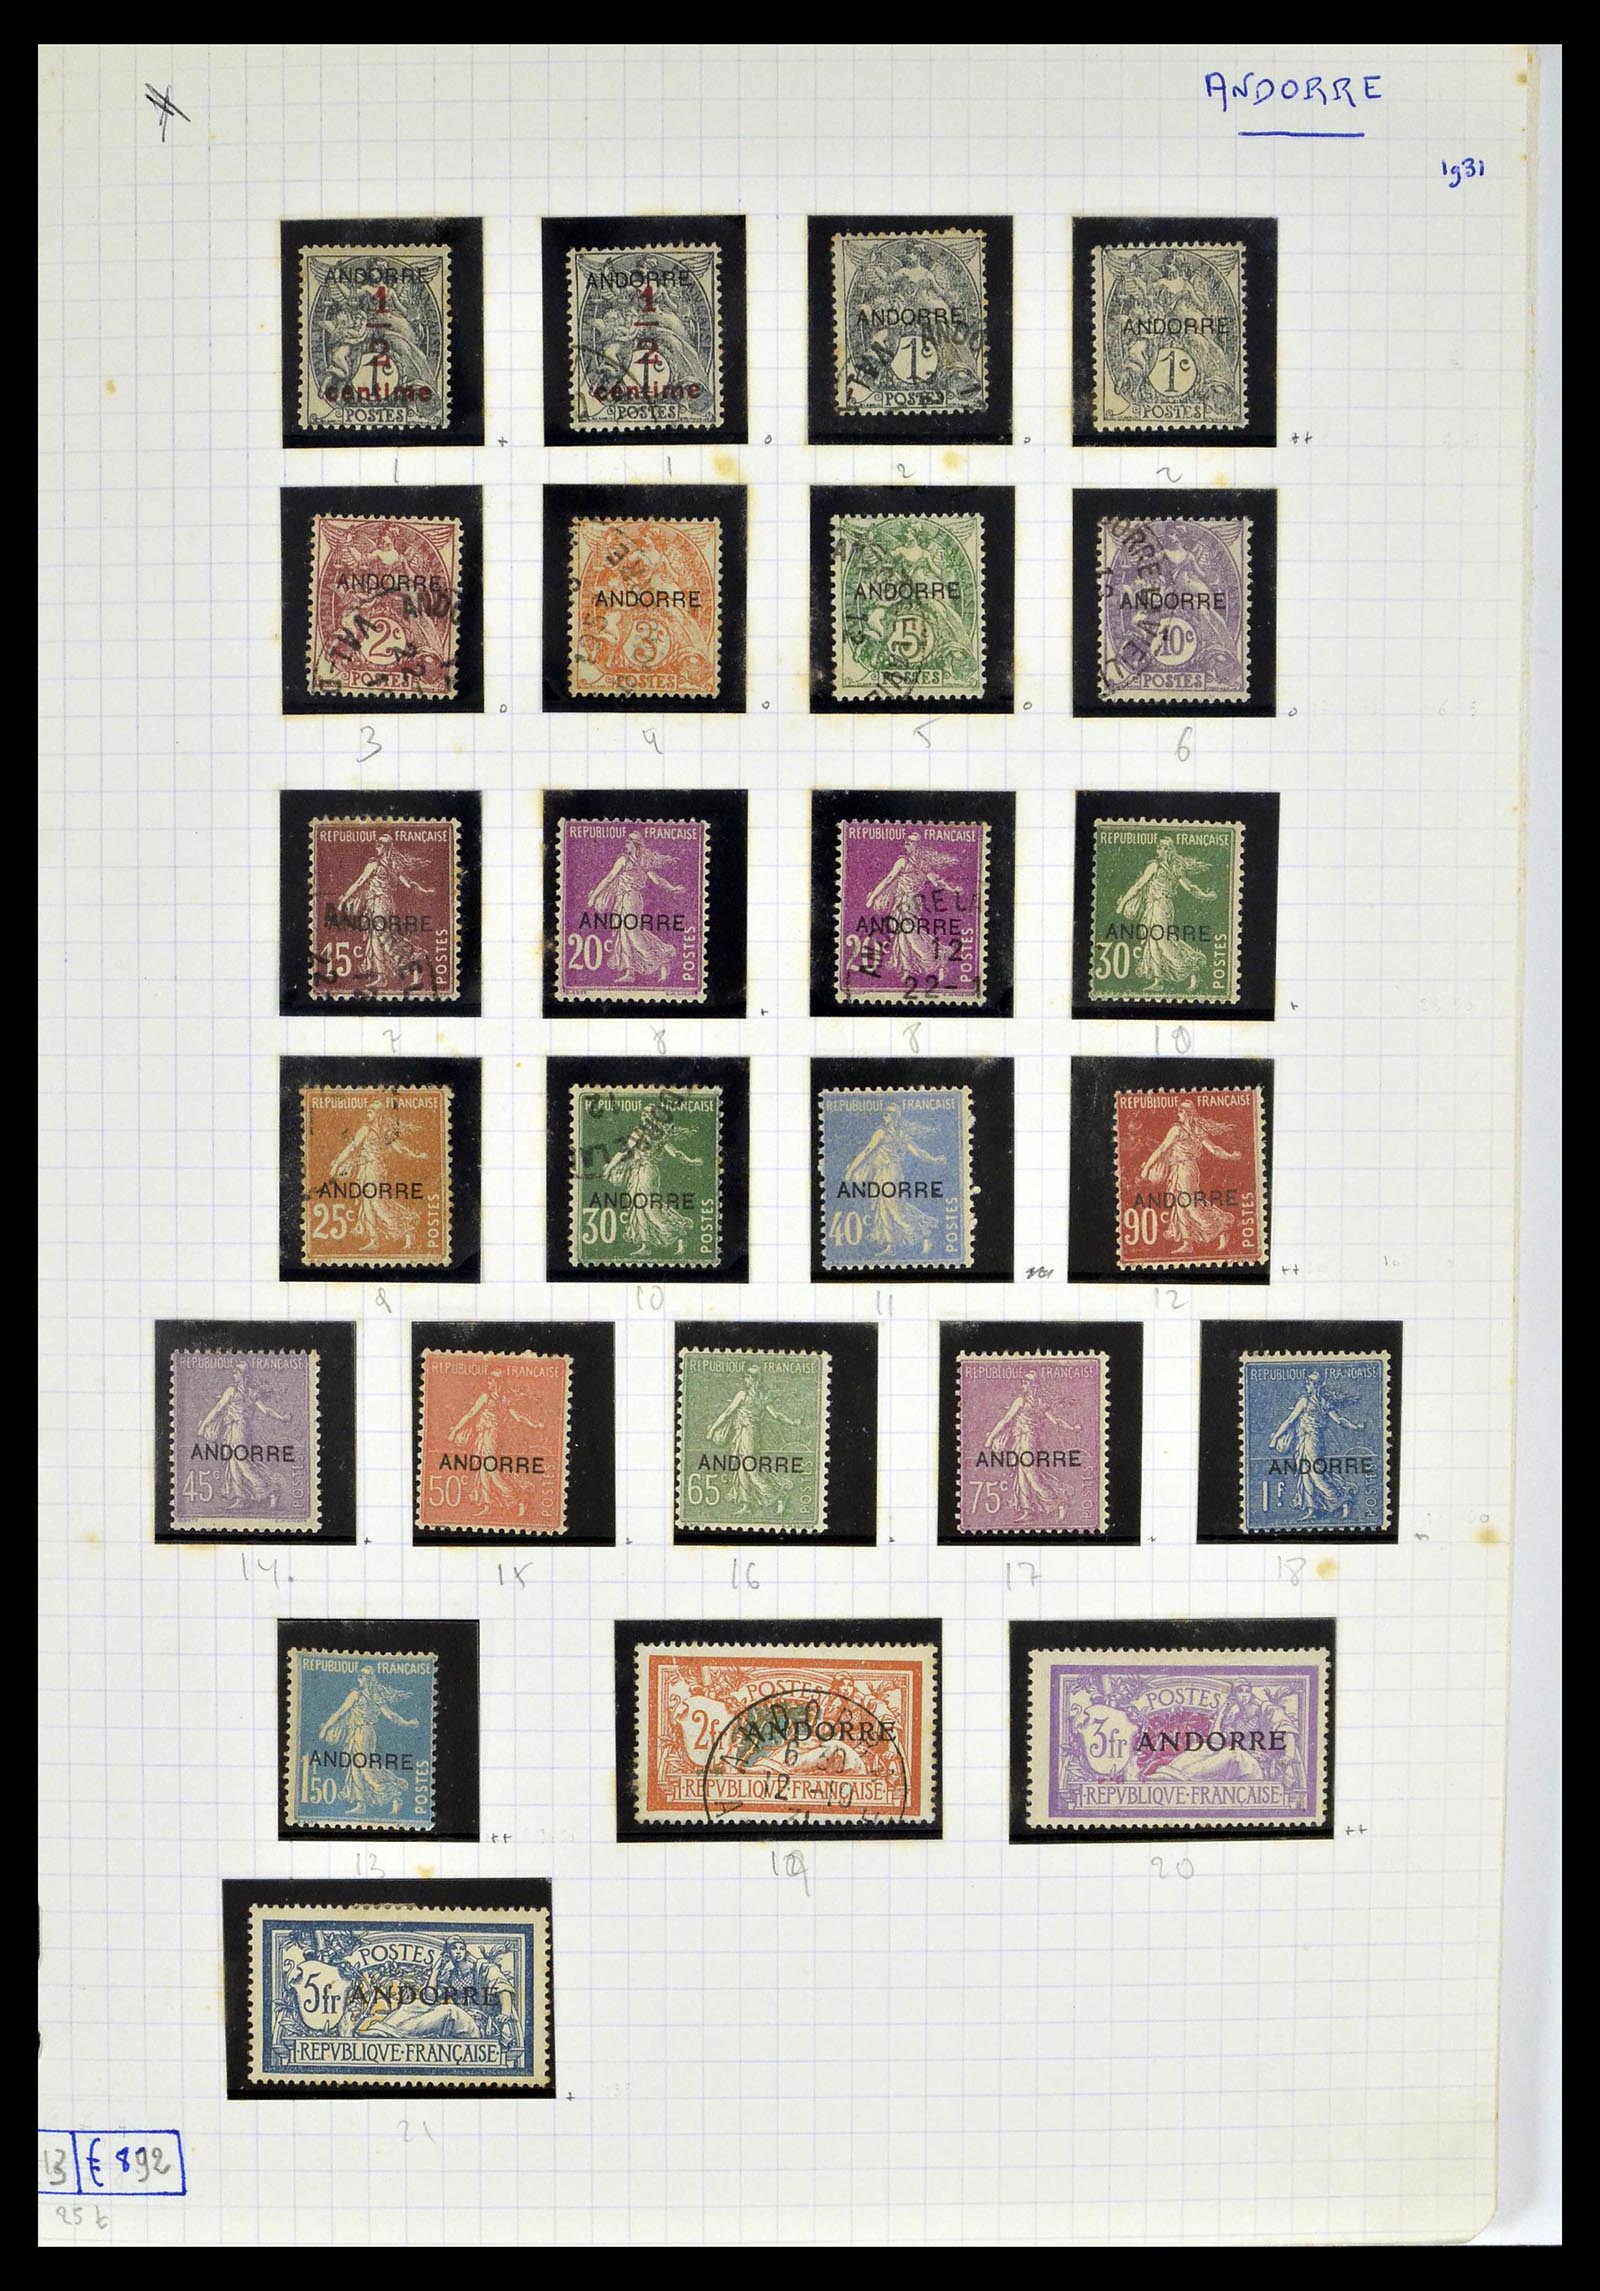 39232 0002 - Postzegelverzameling 39232 Frans Andorra 1931-2013.